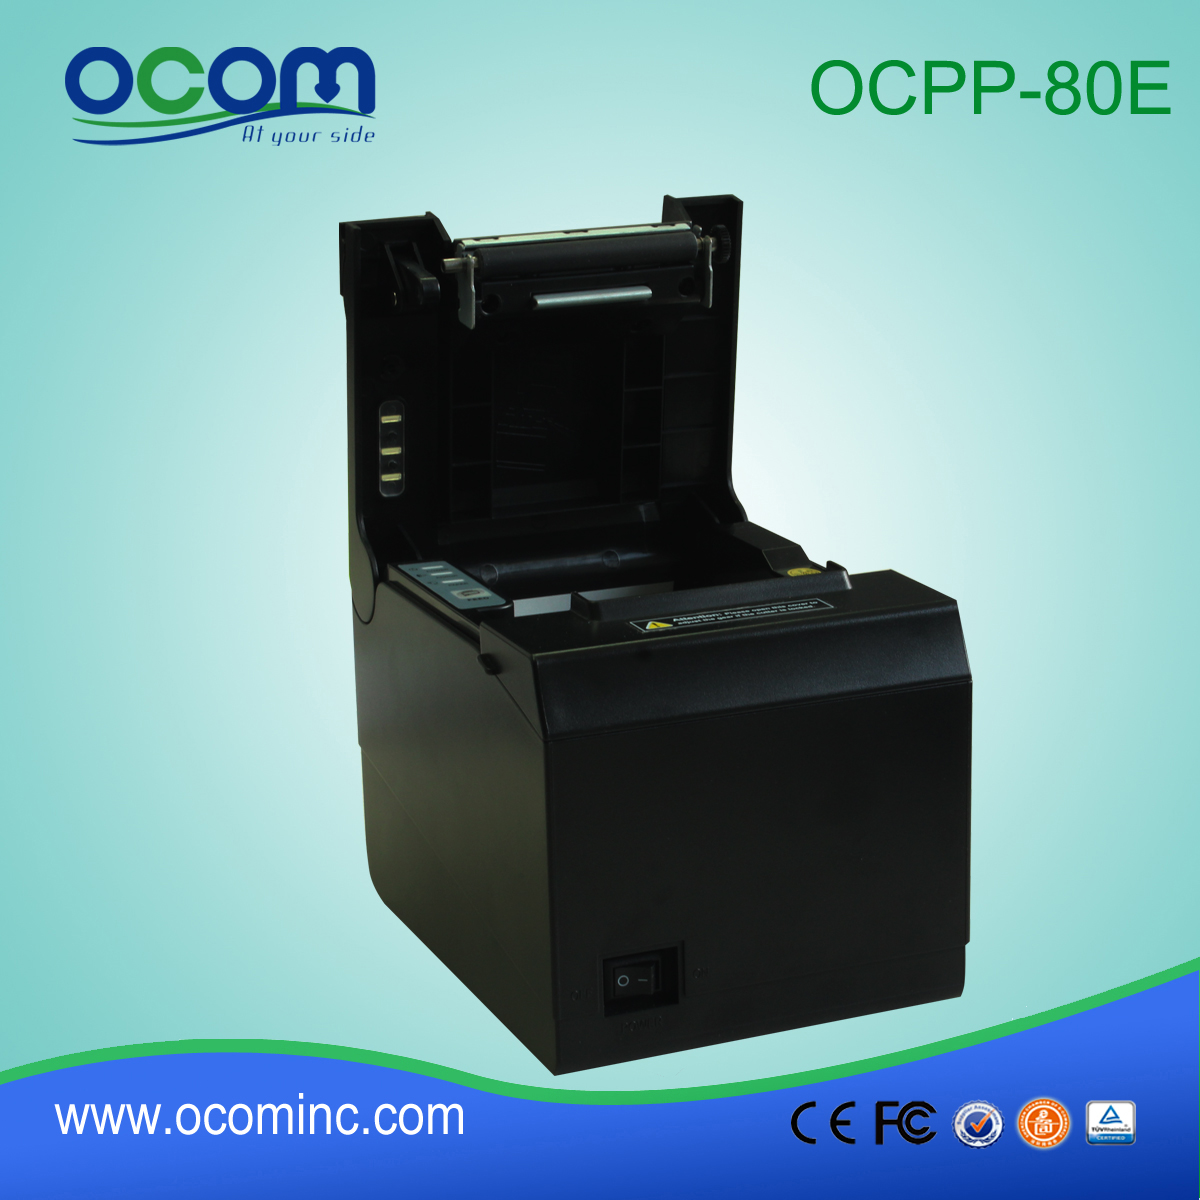 OCPP-80E USB / موازية قطع السيارات 80MM طابعة استلام رخيصة نقاط البيع الحرارية